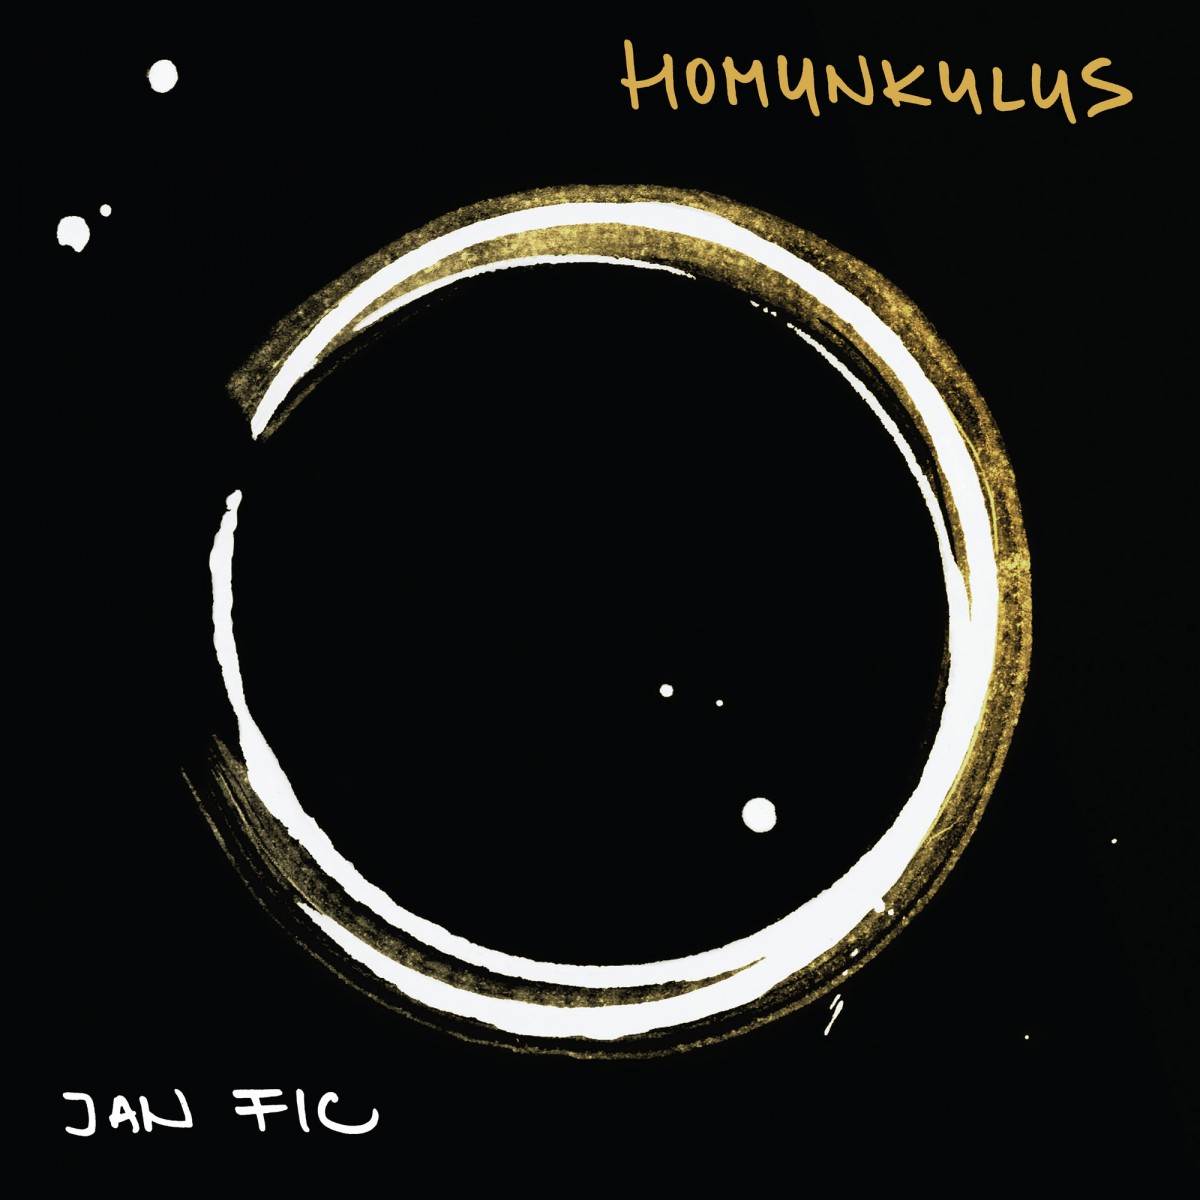 JAN FIC: Homunkulus